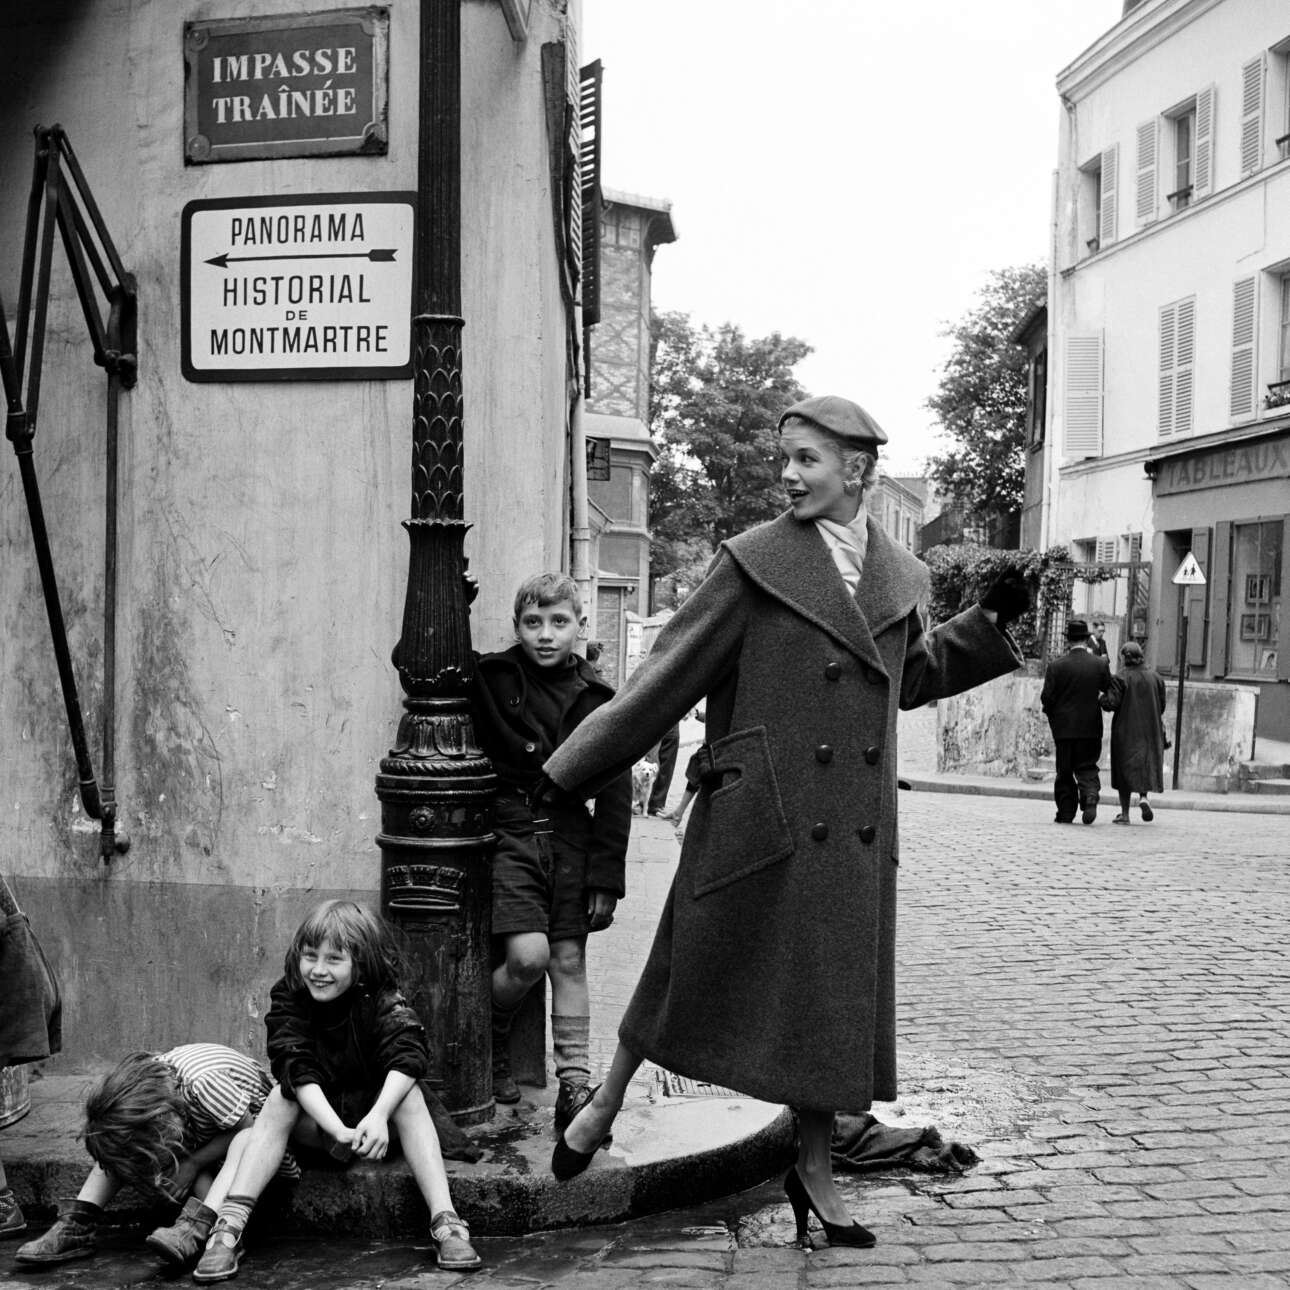 Μοντέλο ποζάρει δίπλα σε παιδιά στη Μονμάρτρη, το 1960. «Τα παιδιά στους δρόμους του Παρισιού πάντα με ακολουθούσαν για να μπουν και αυτά στο κάδρο», είχε δηλώσει η Στάφορντ